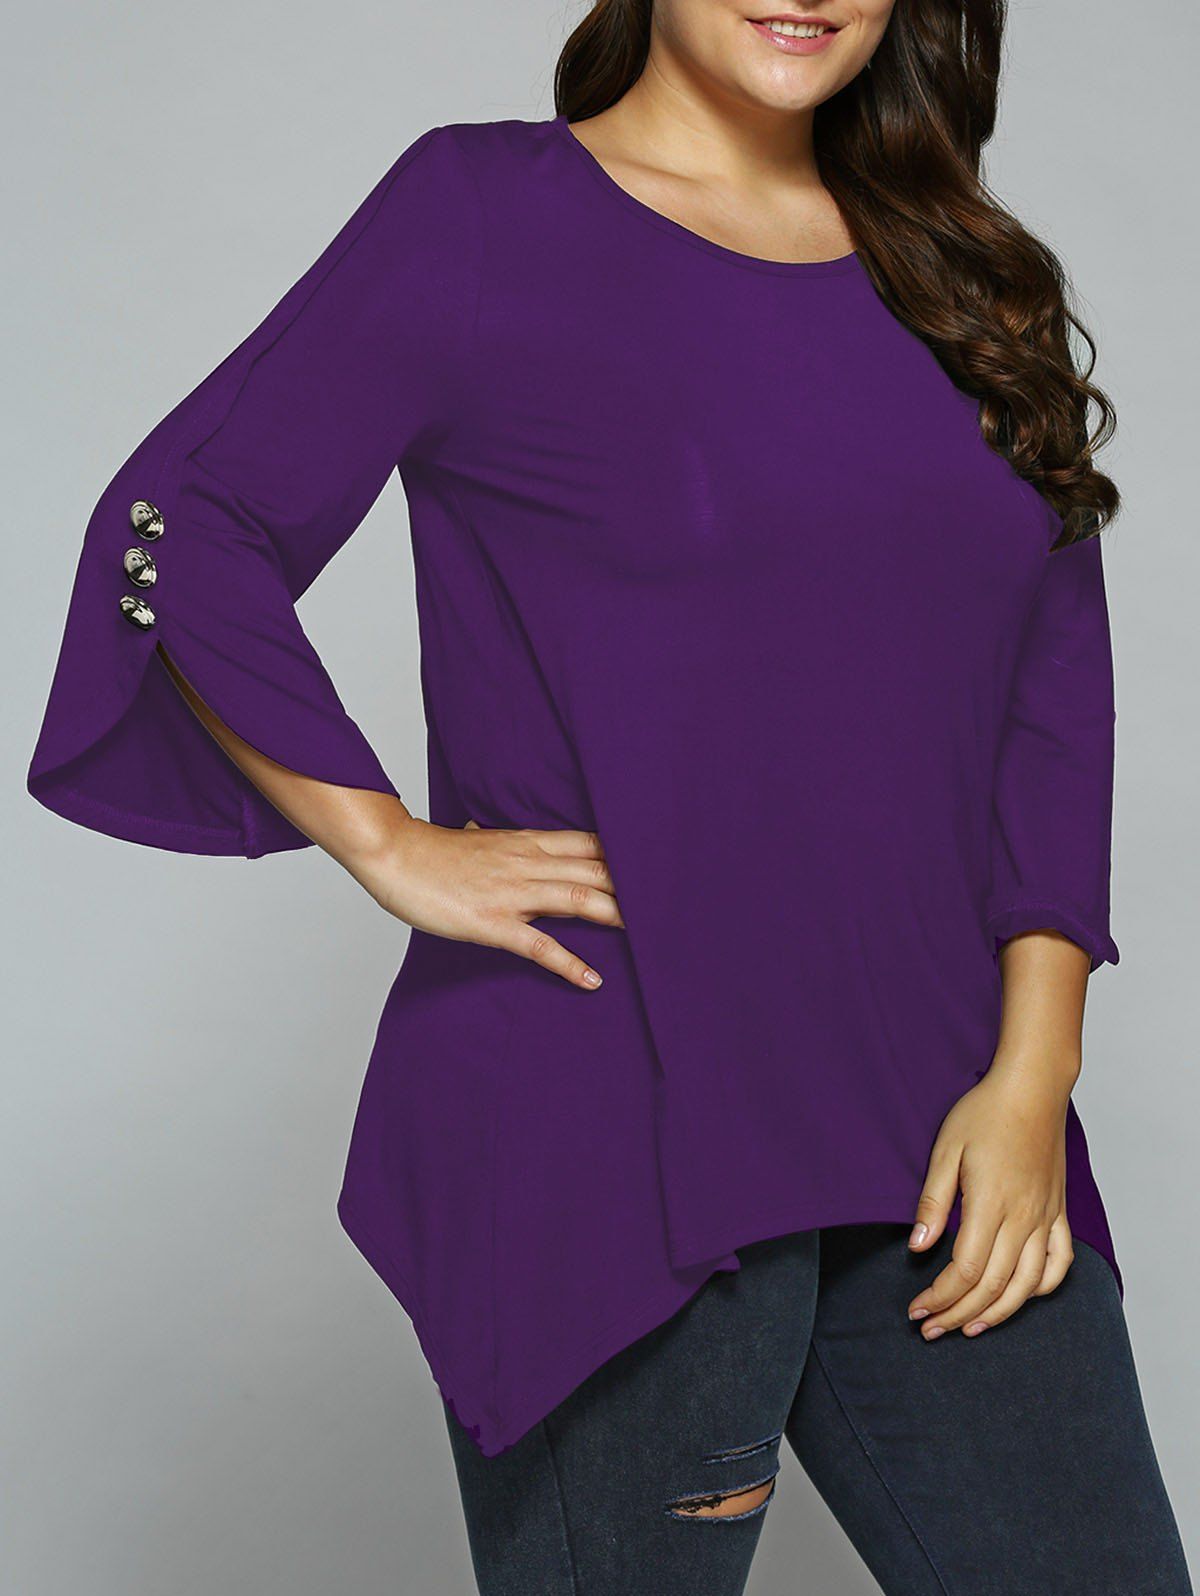 Purple blouses for women dress barn sale